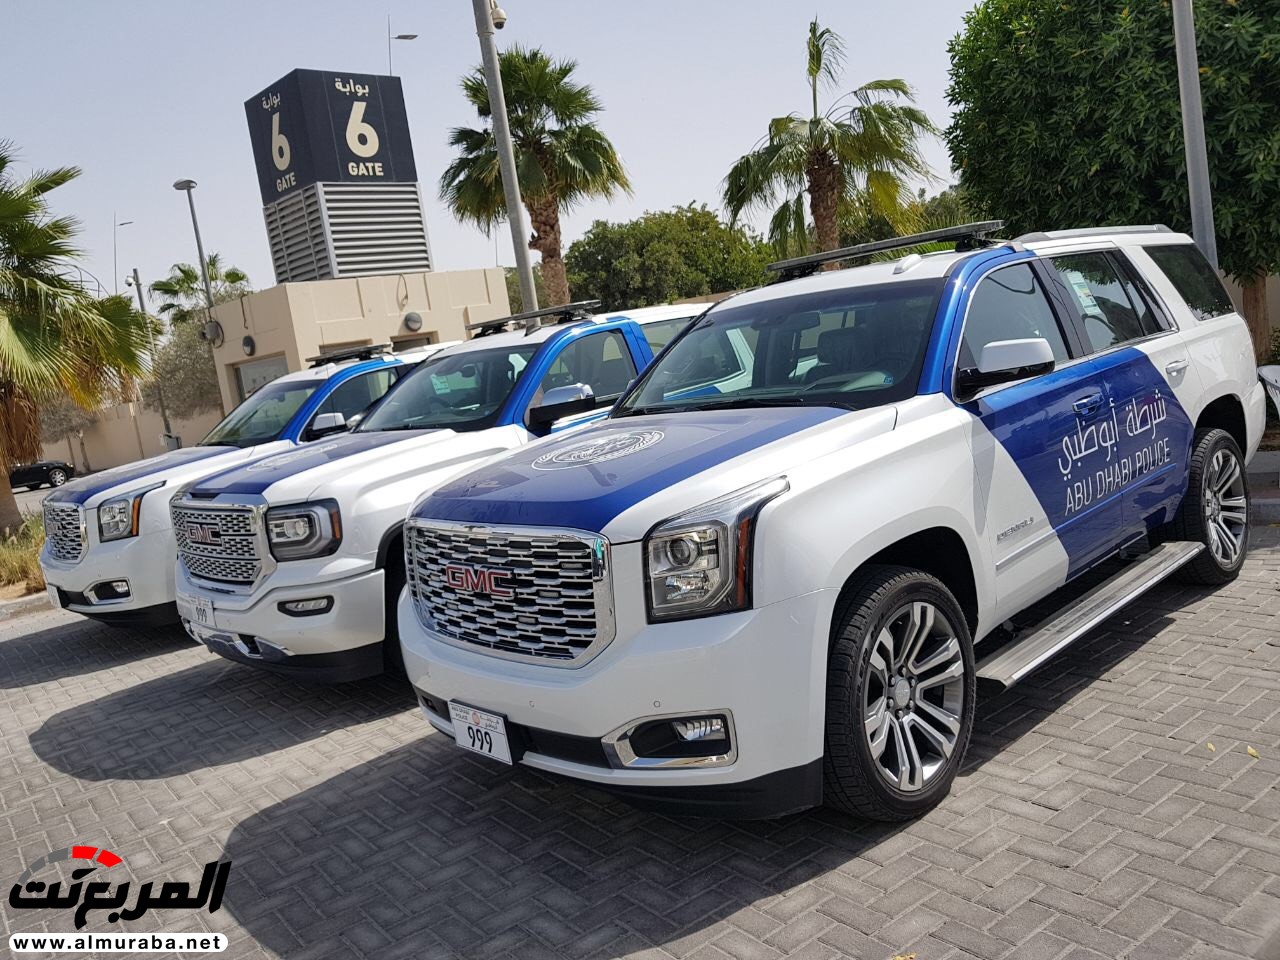 191 سيارة جمس تدخل موسوعة جينيس بعد تنظيم استعراض في أبو ظبي 5